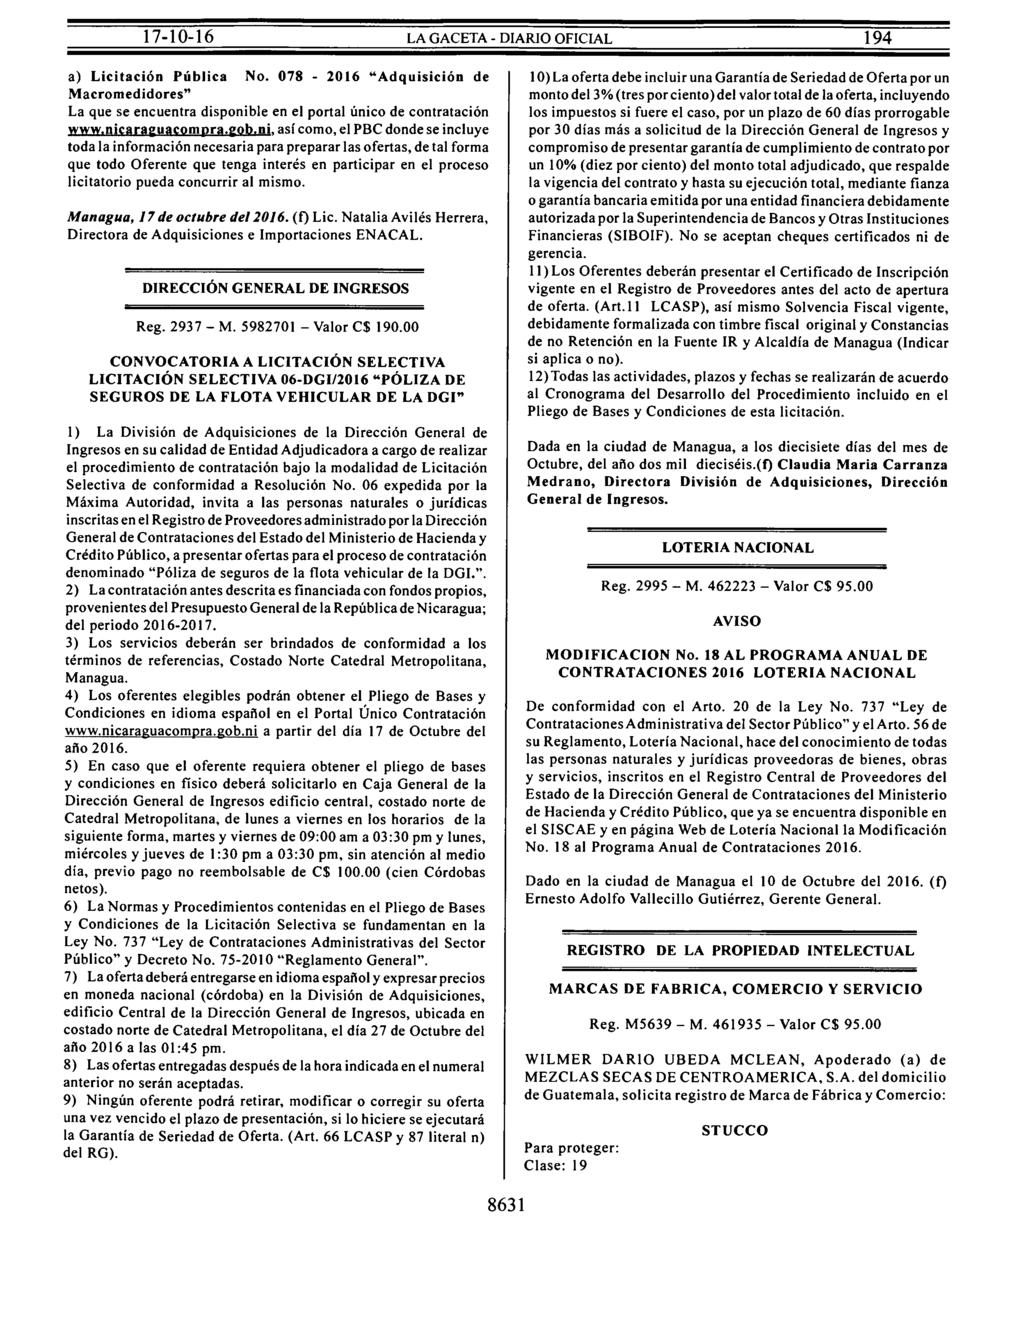 a) Licitación Pública No. 078-2016 "Adquisición de Macromedidores" La que se encuentra disponible en el portal único de contratación www.nicara :uacompra. :ob.